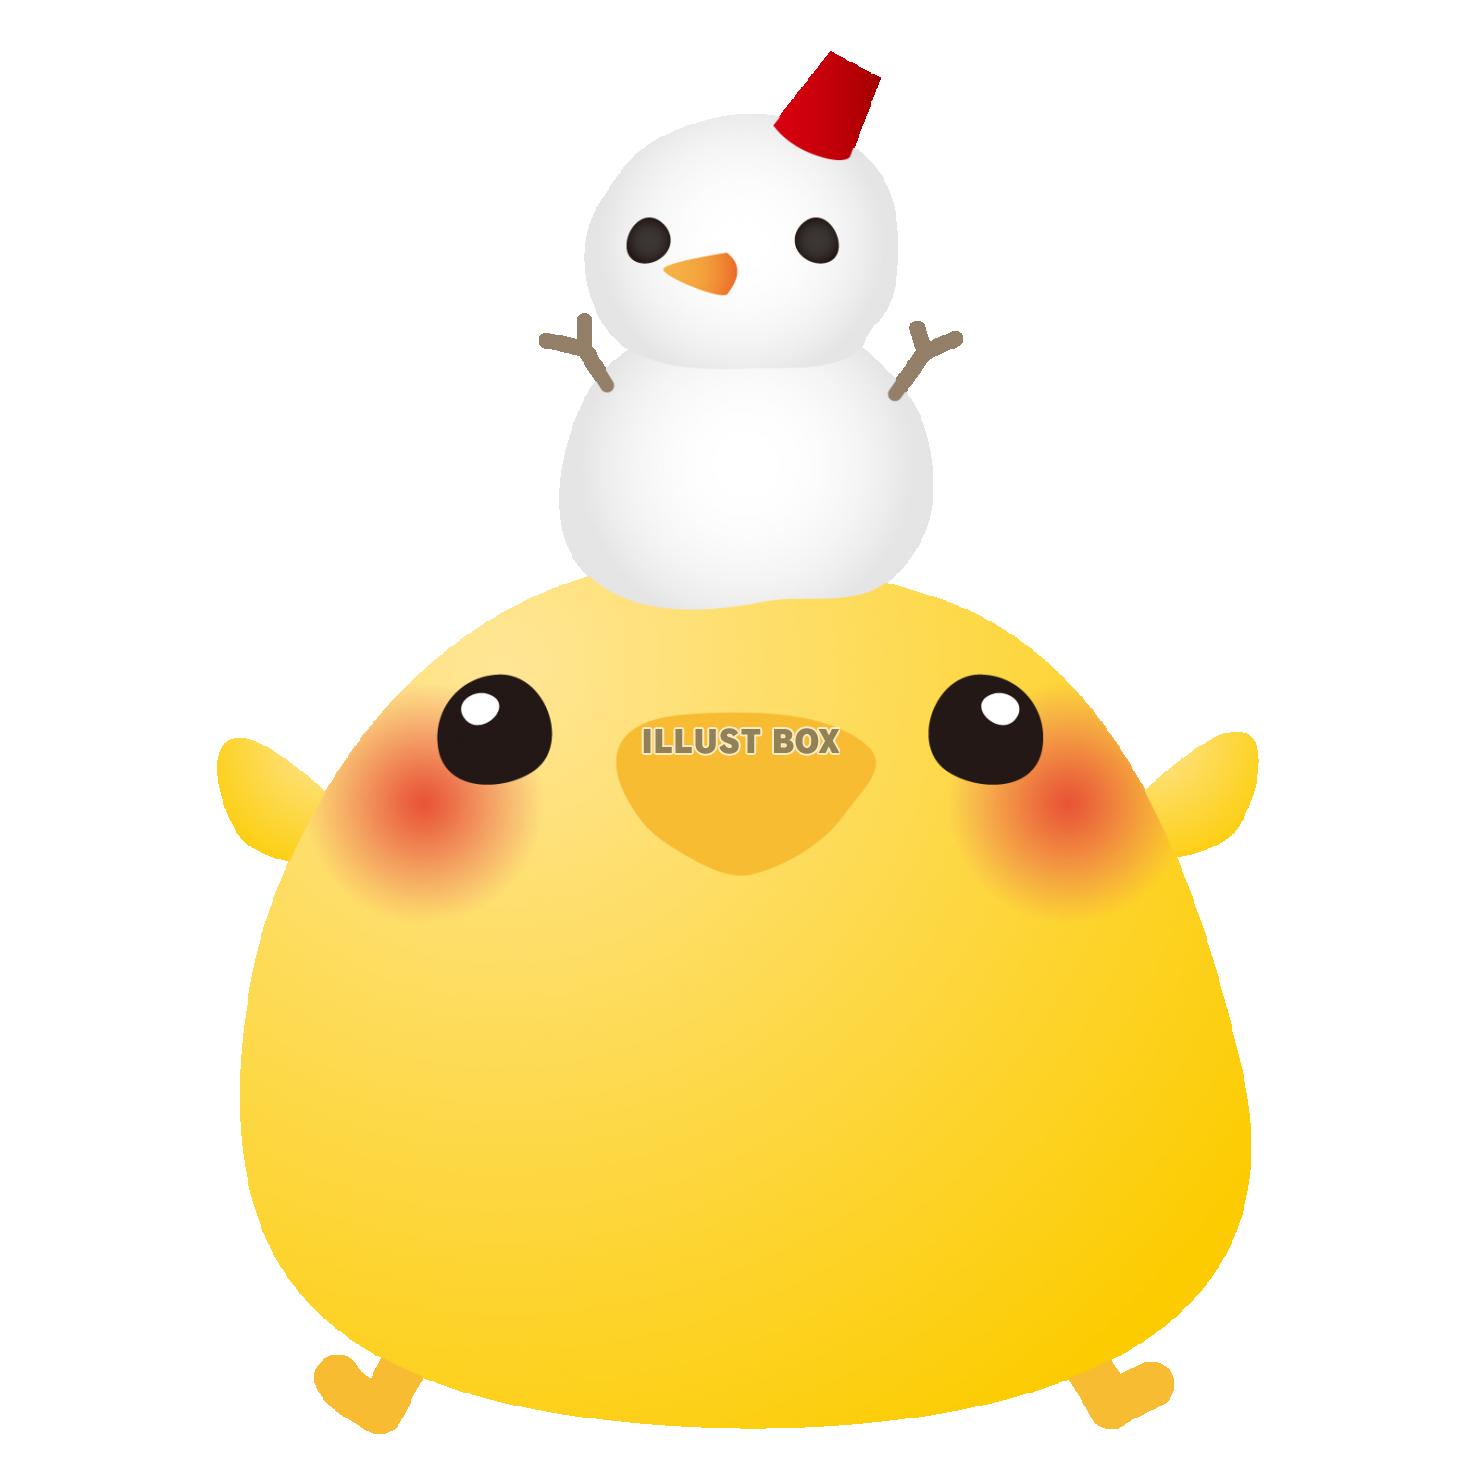 国内代理店版 クリスマス☆雪だるま&ひよこ おもちゃ/人形